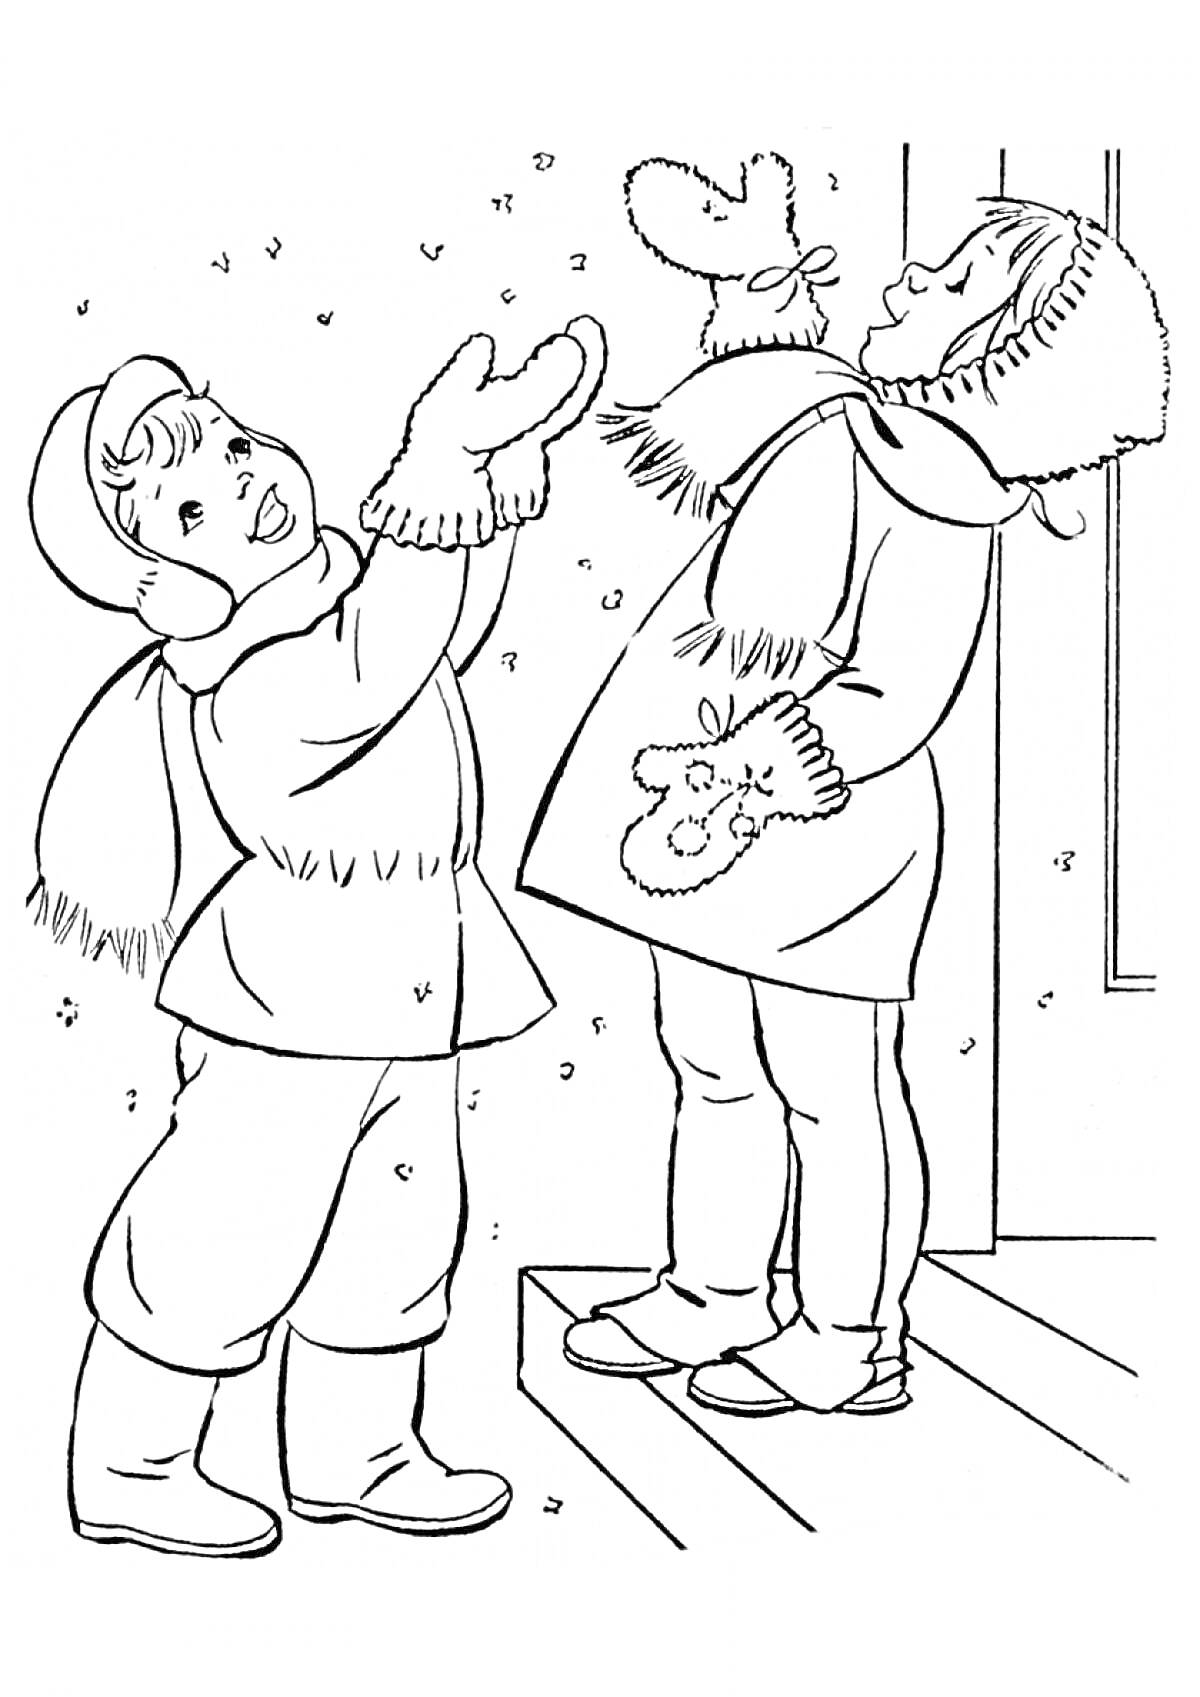 Раскраска Дети ловят снегflakes. Два ребенка в зимней одежде на улице, один стоит, второй на крыльце, снежинки